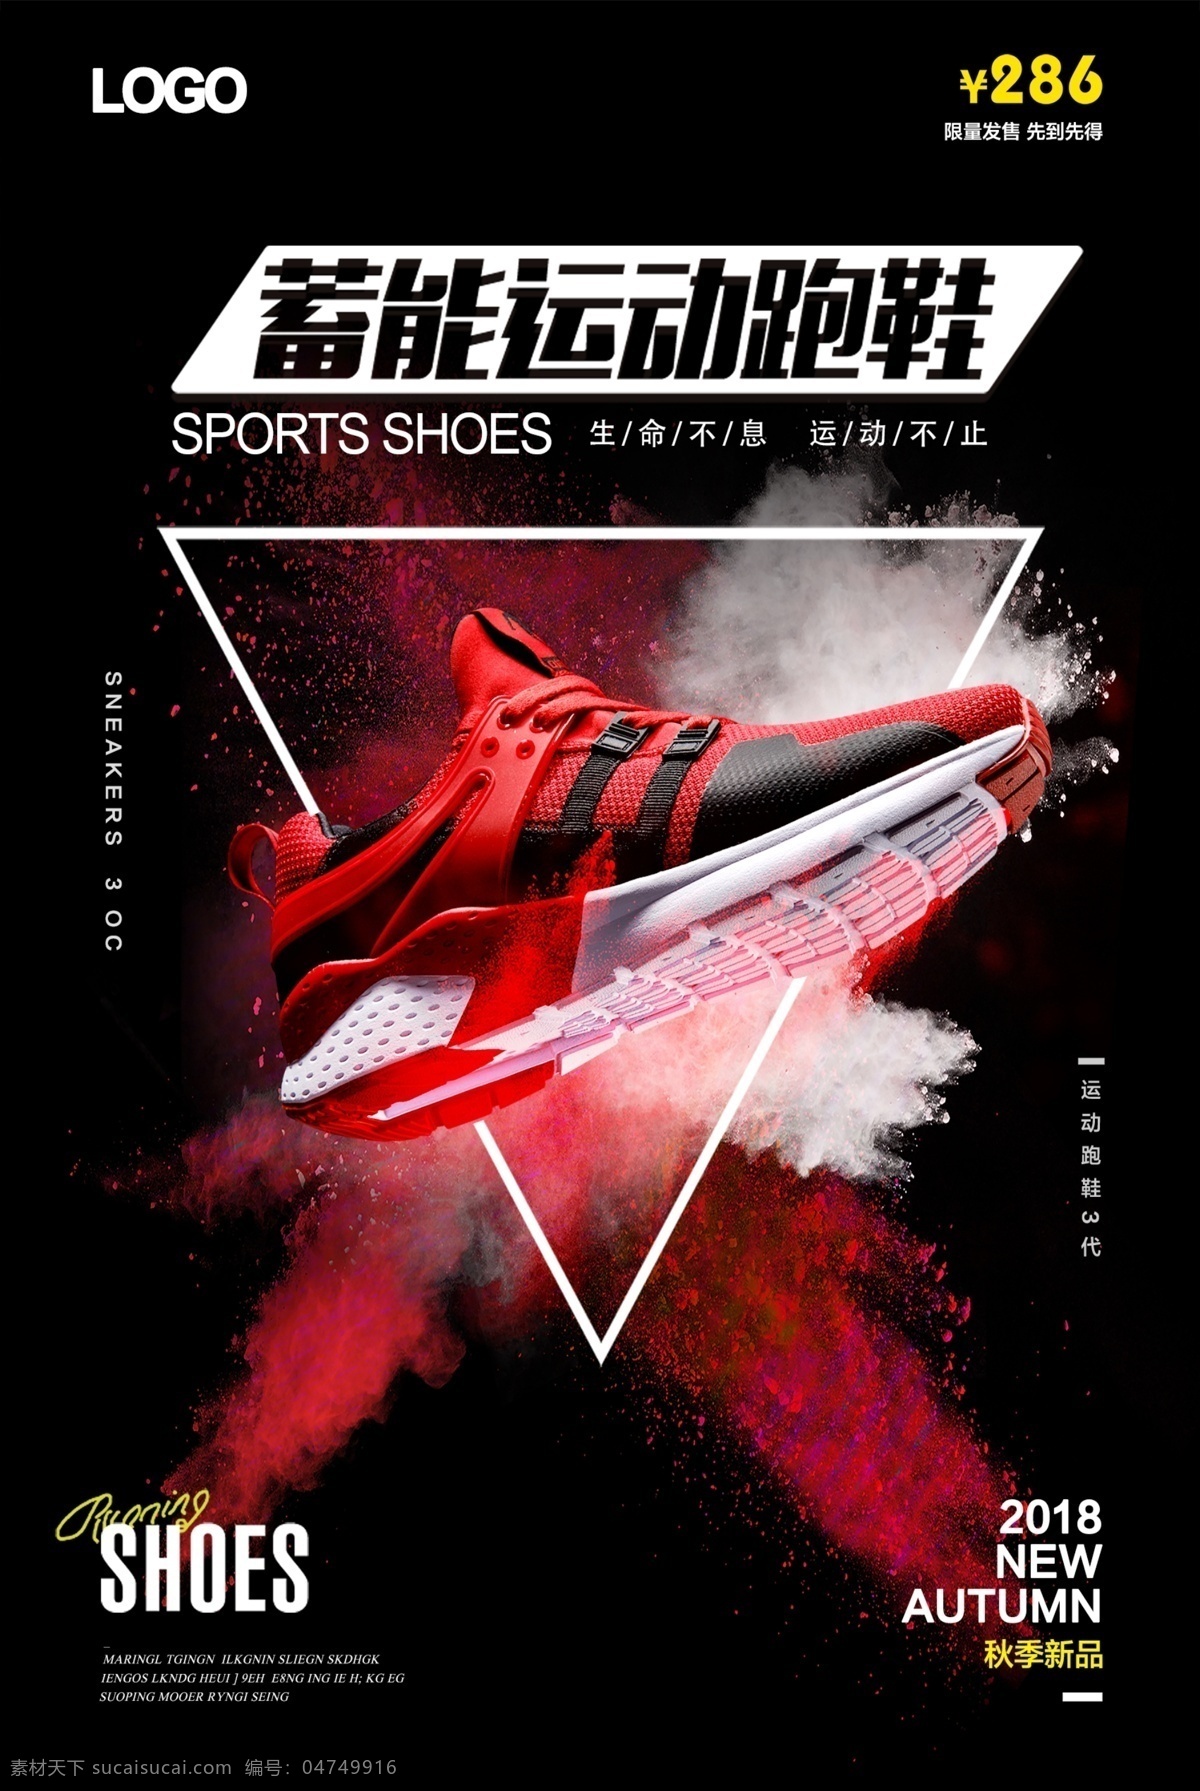 运动 跑鞋 促销 海报 运动鞋 鞋子 男鞋 shoes 秋季新品 新品上市 产品展示